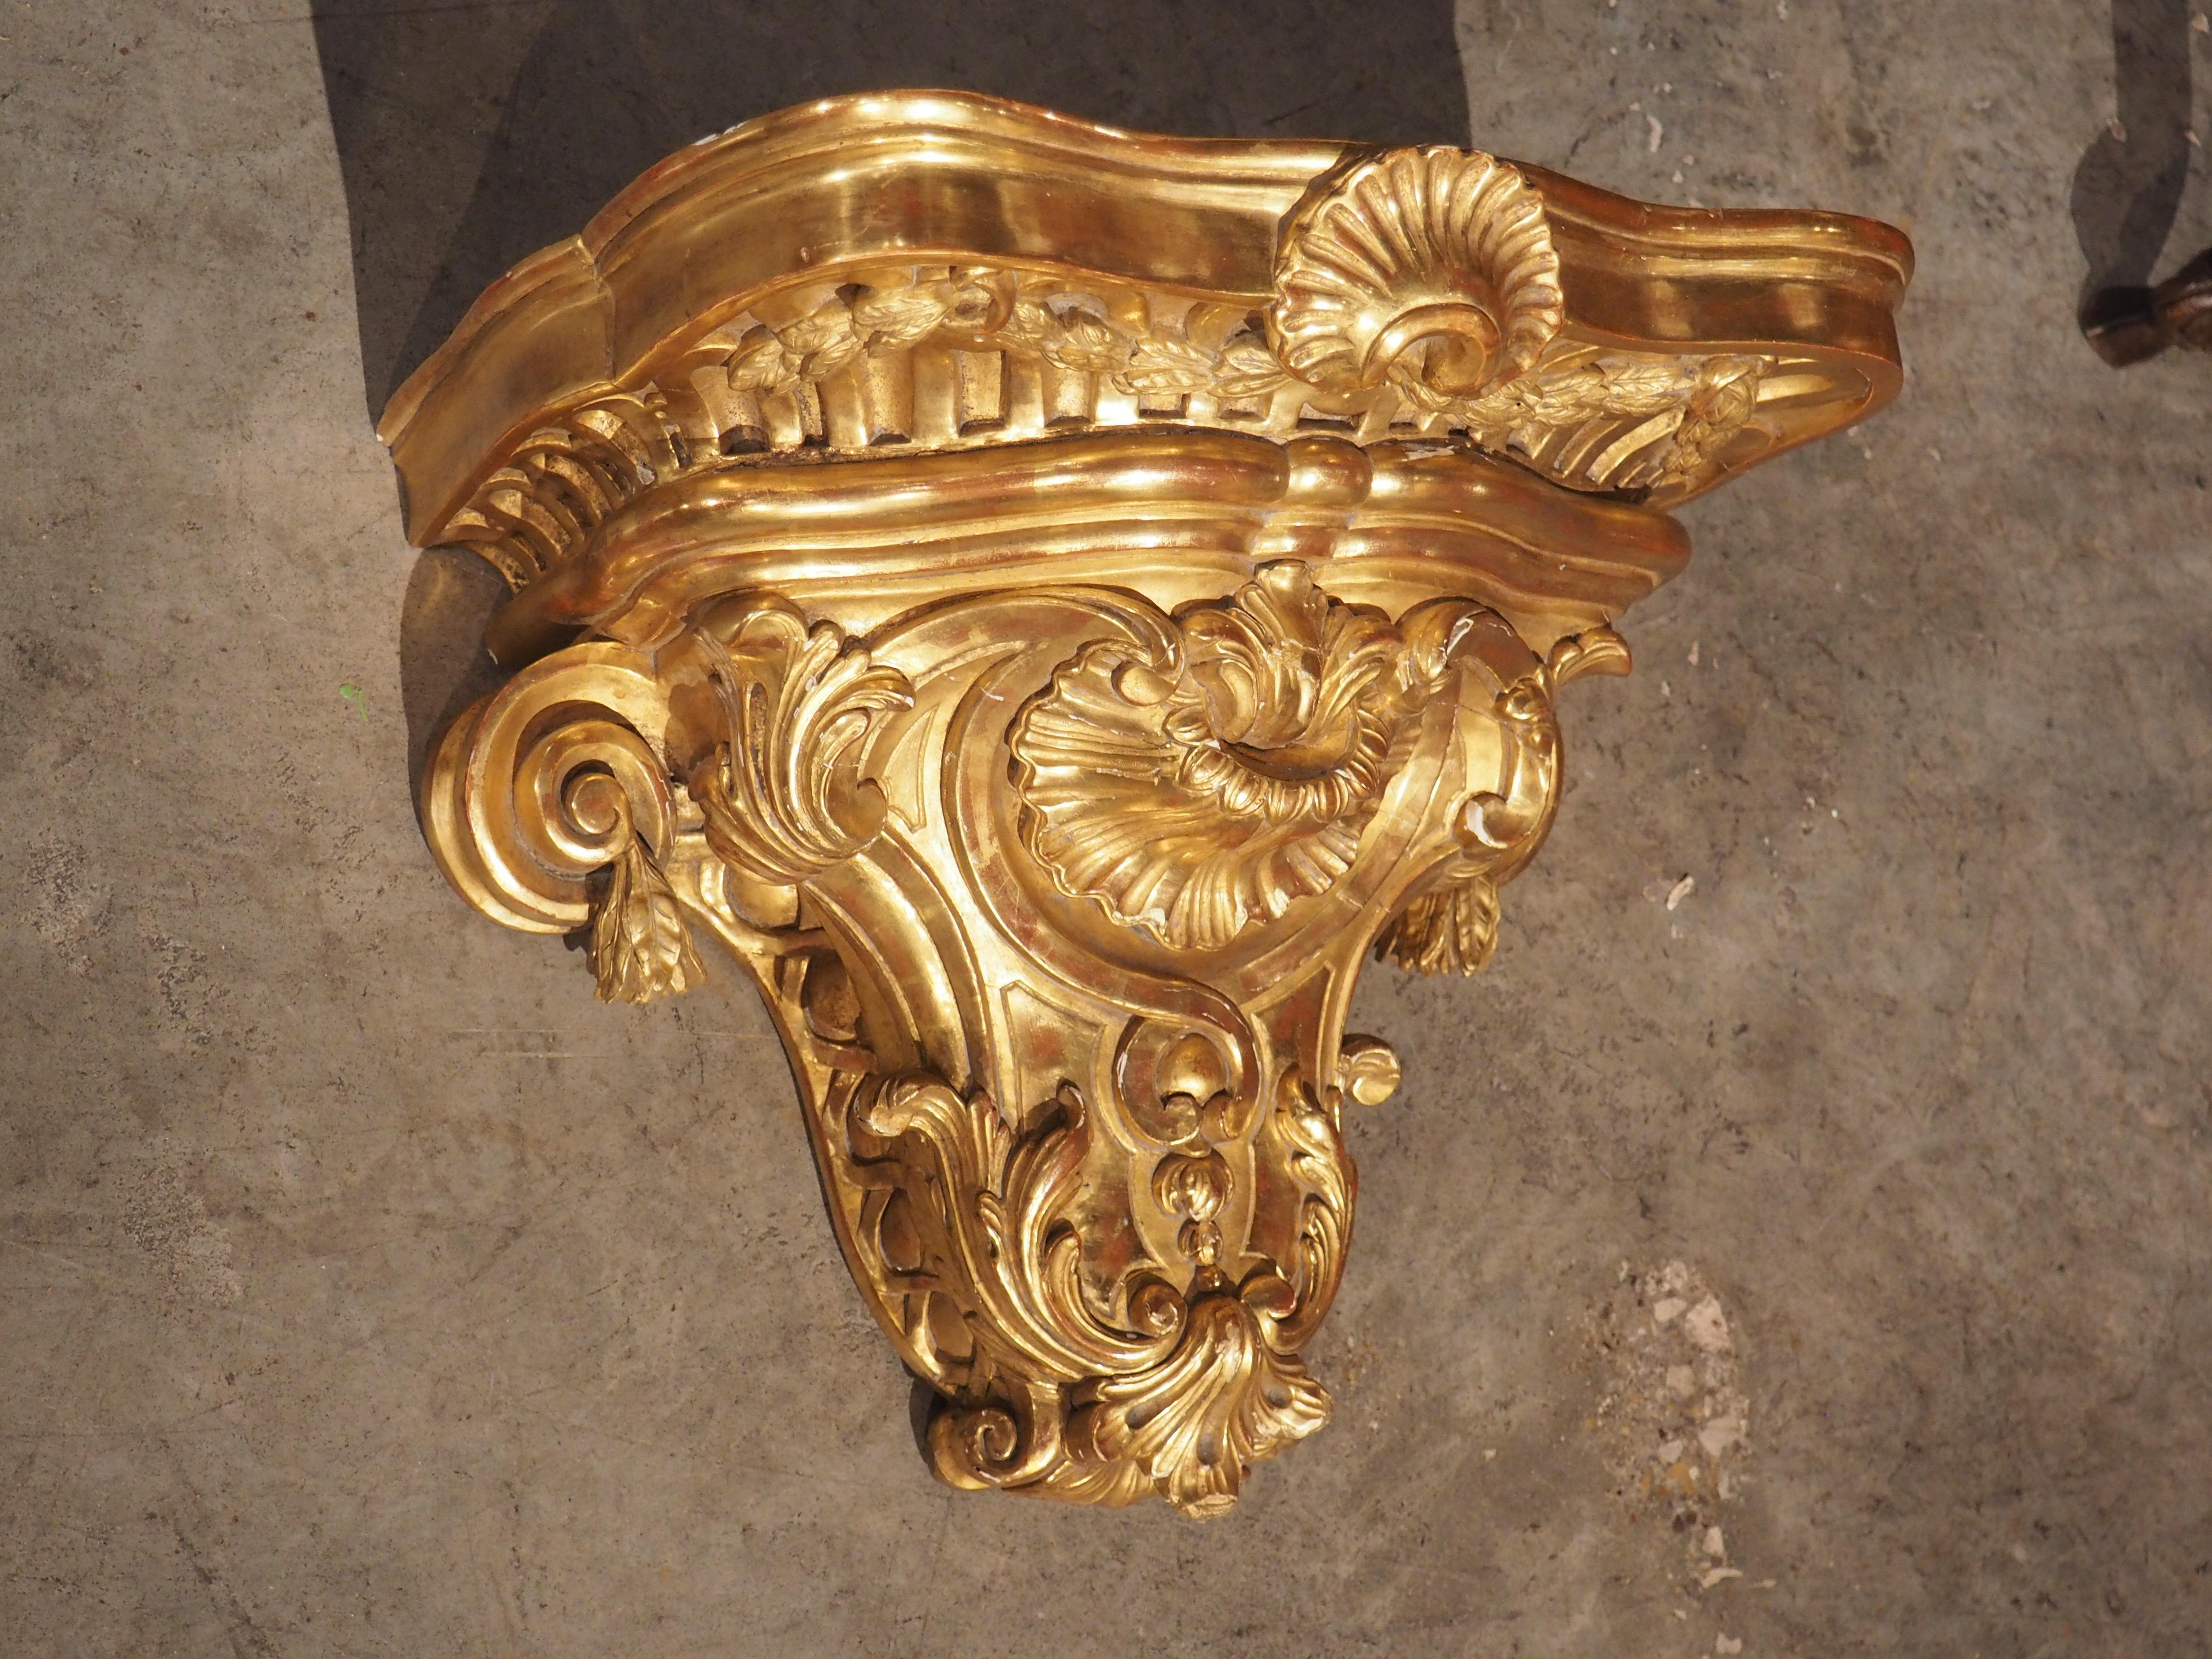 Sculptée à la main en France, vers 1850, cette élégante étagère présente des éléments inspirés de la nature, connus sous le nom de style Rocaille. L'opulente étagère murale en bois doré présente une patine riche et vibrante, avec une usure